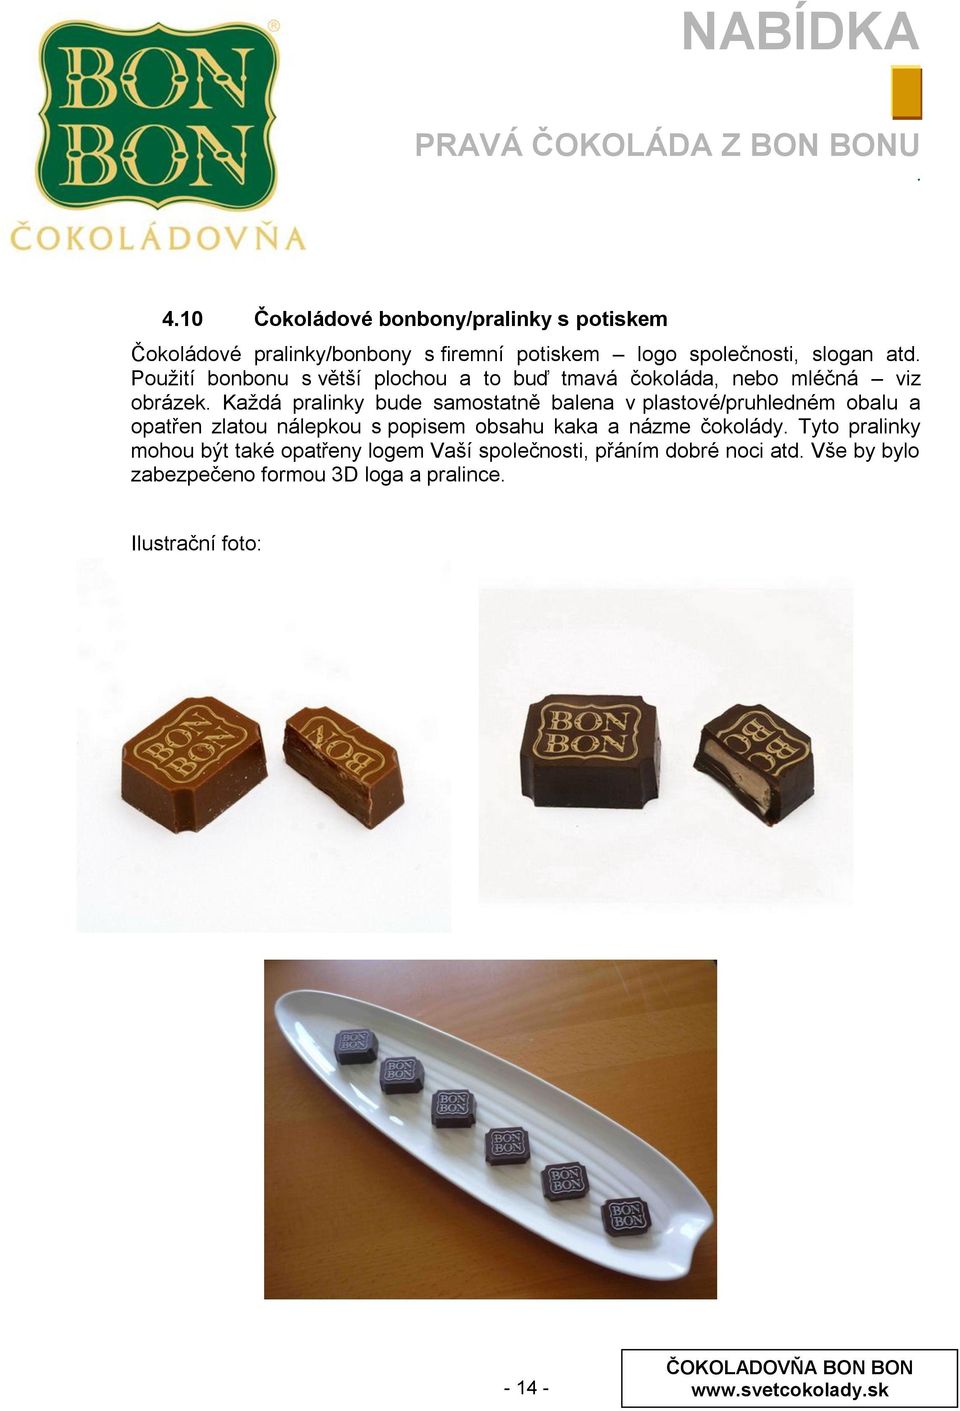 plastové/pruhledném obalu a opatřen zlatou nálepkou s popisem obsahu kaka a názme čokolády Tyto pralinky mohou být také